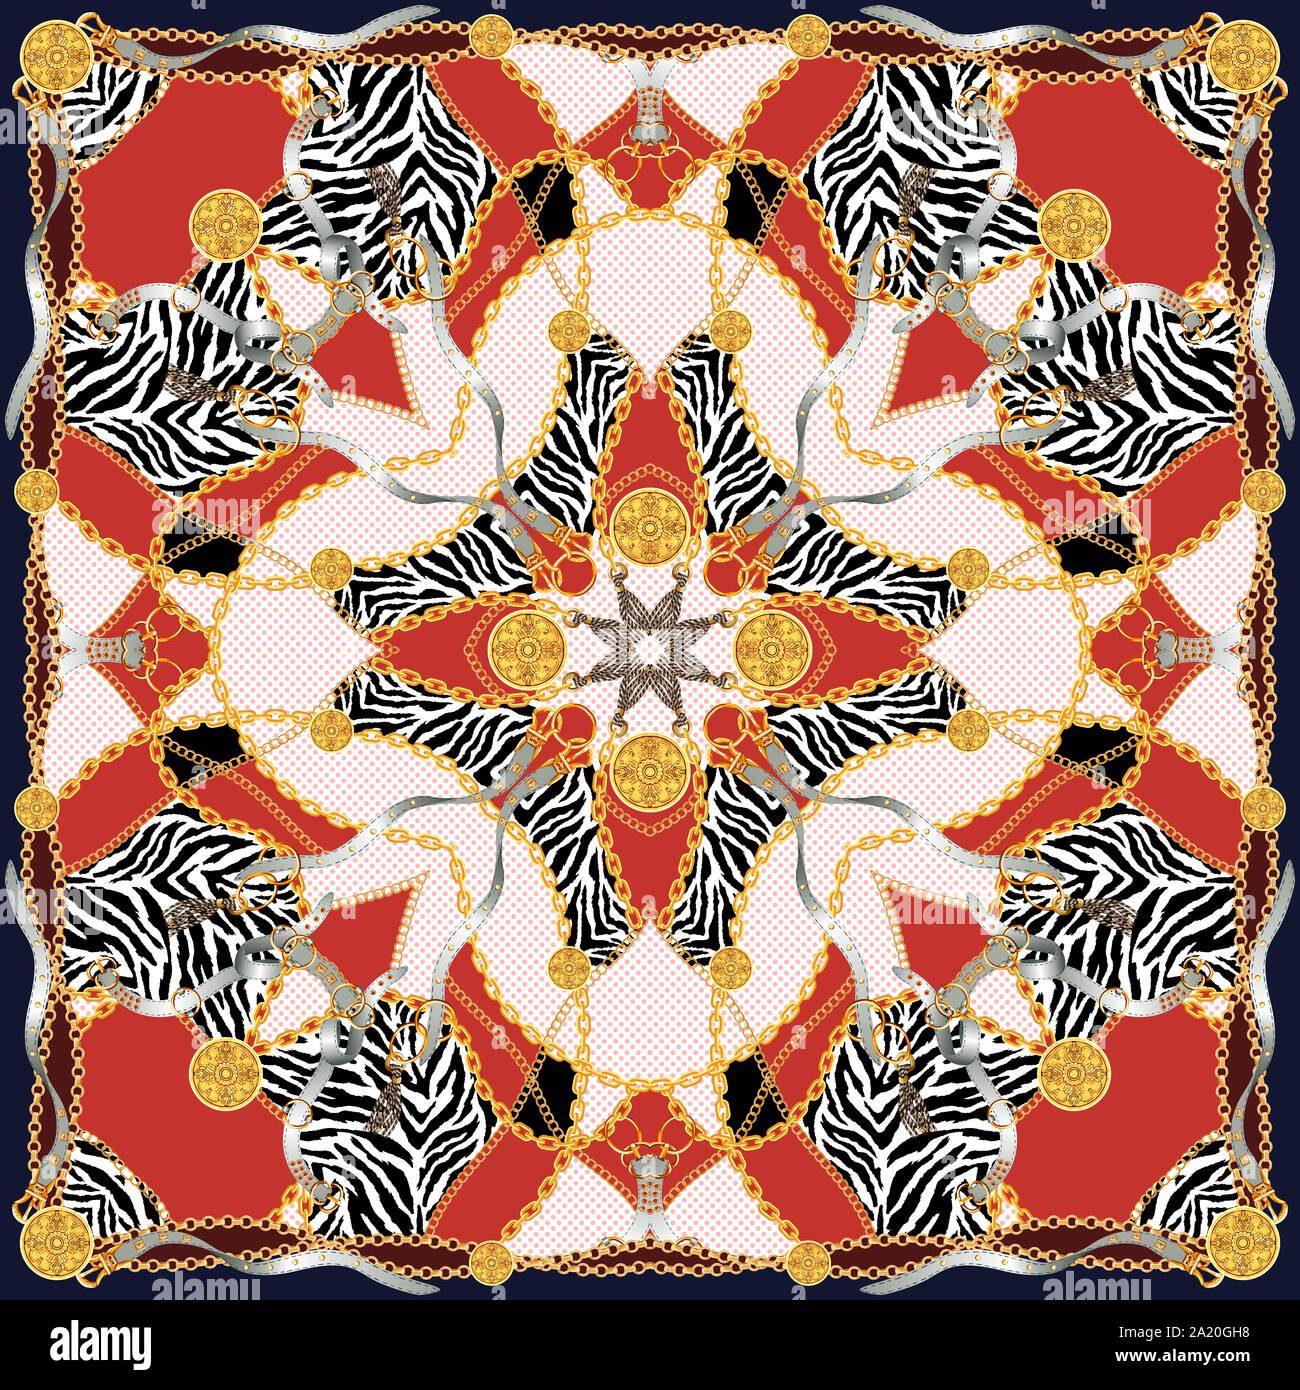 Trendy print mit goldenen Ketten, Riemen und Zebra. Nahtlose Muster mit klassischen Elementen. Damenmode, modernen Schal Sammlung für Textildruck. Stockfoto